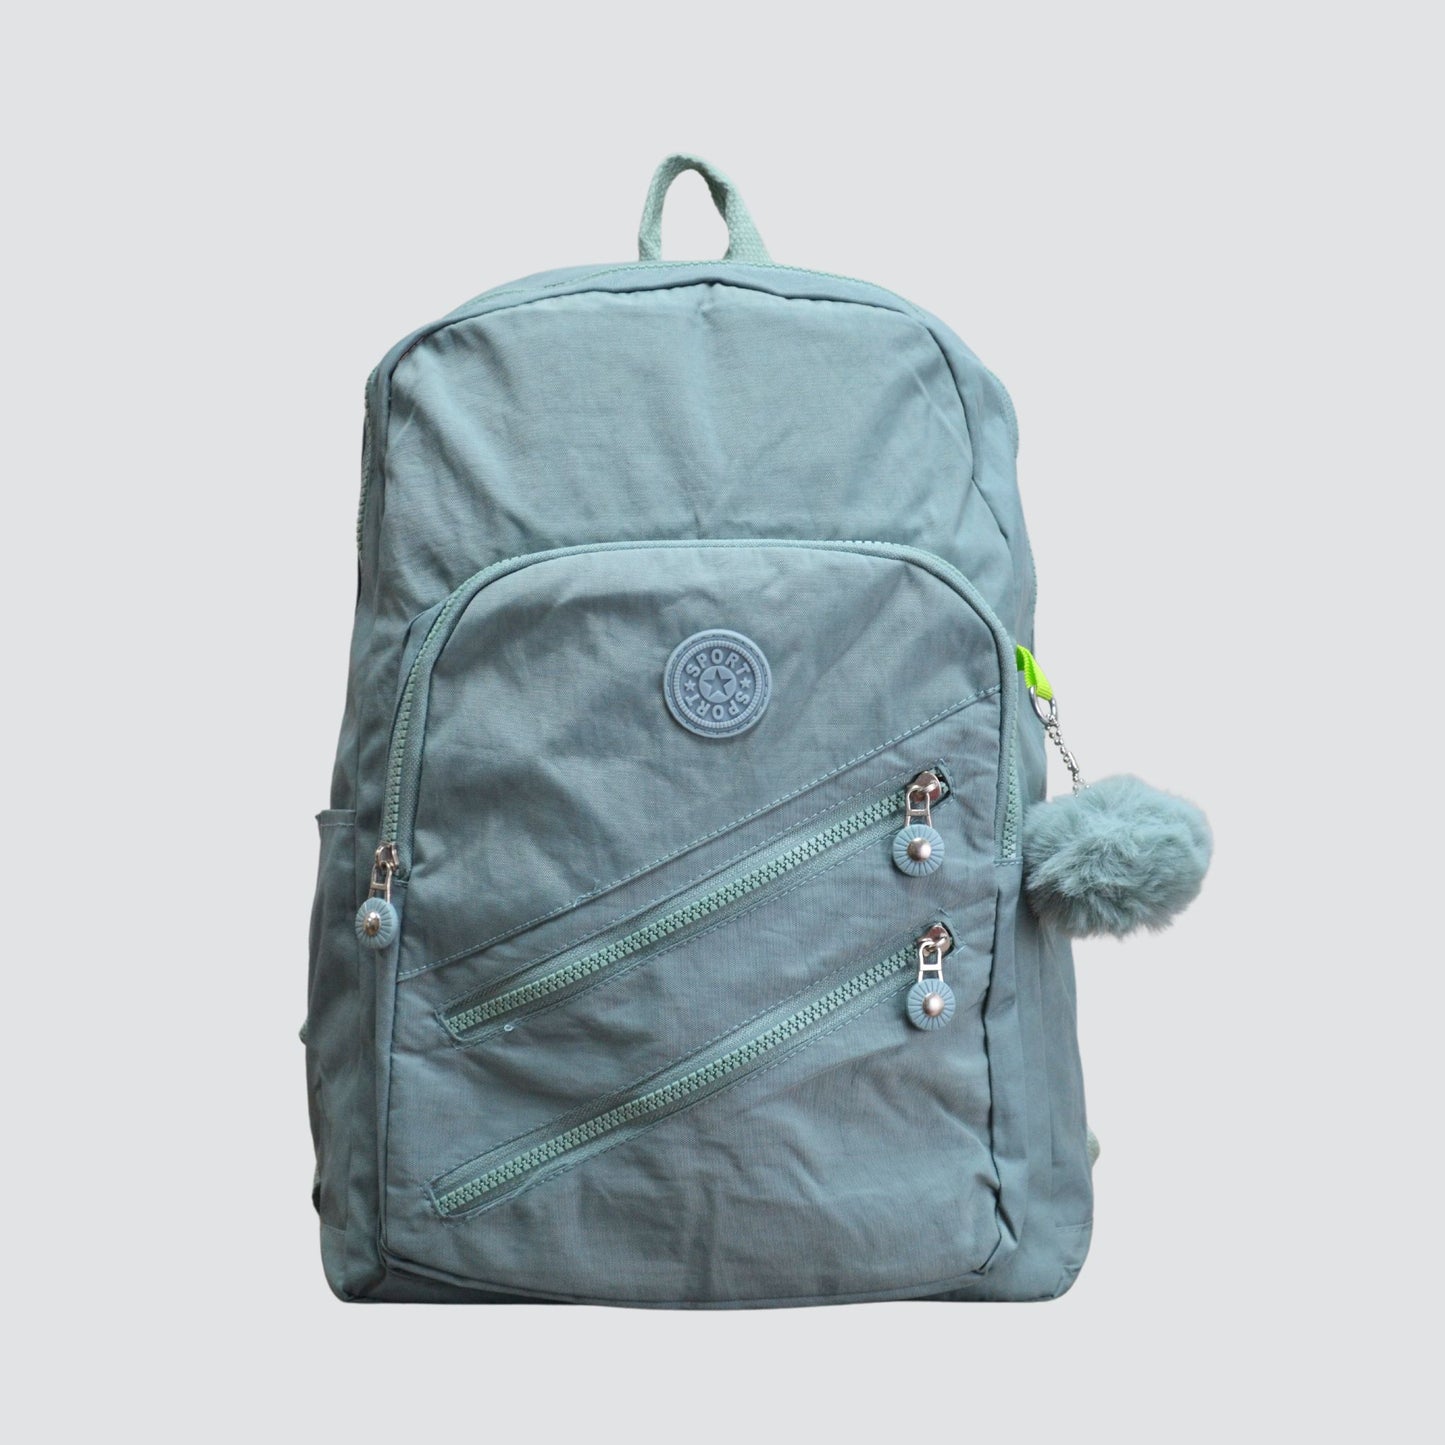 Green Sport Multipurpose Backpack